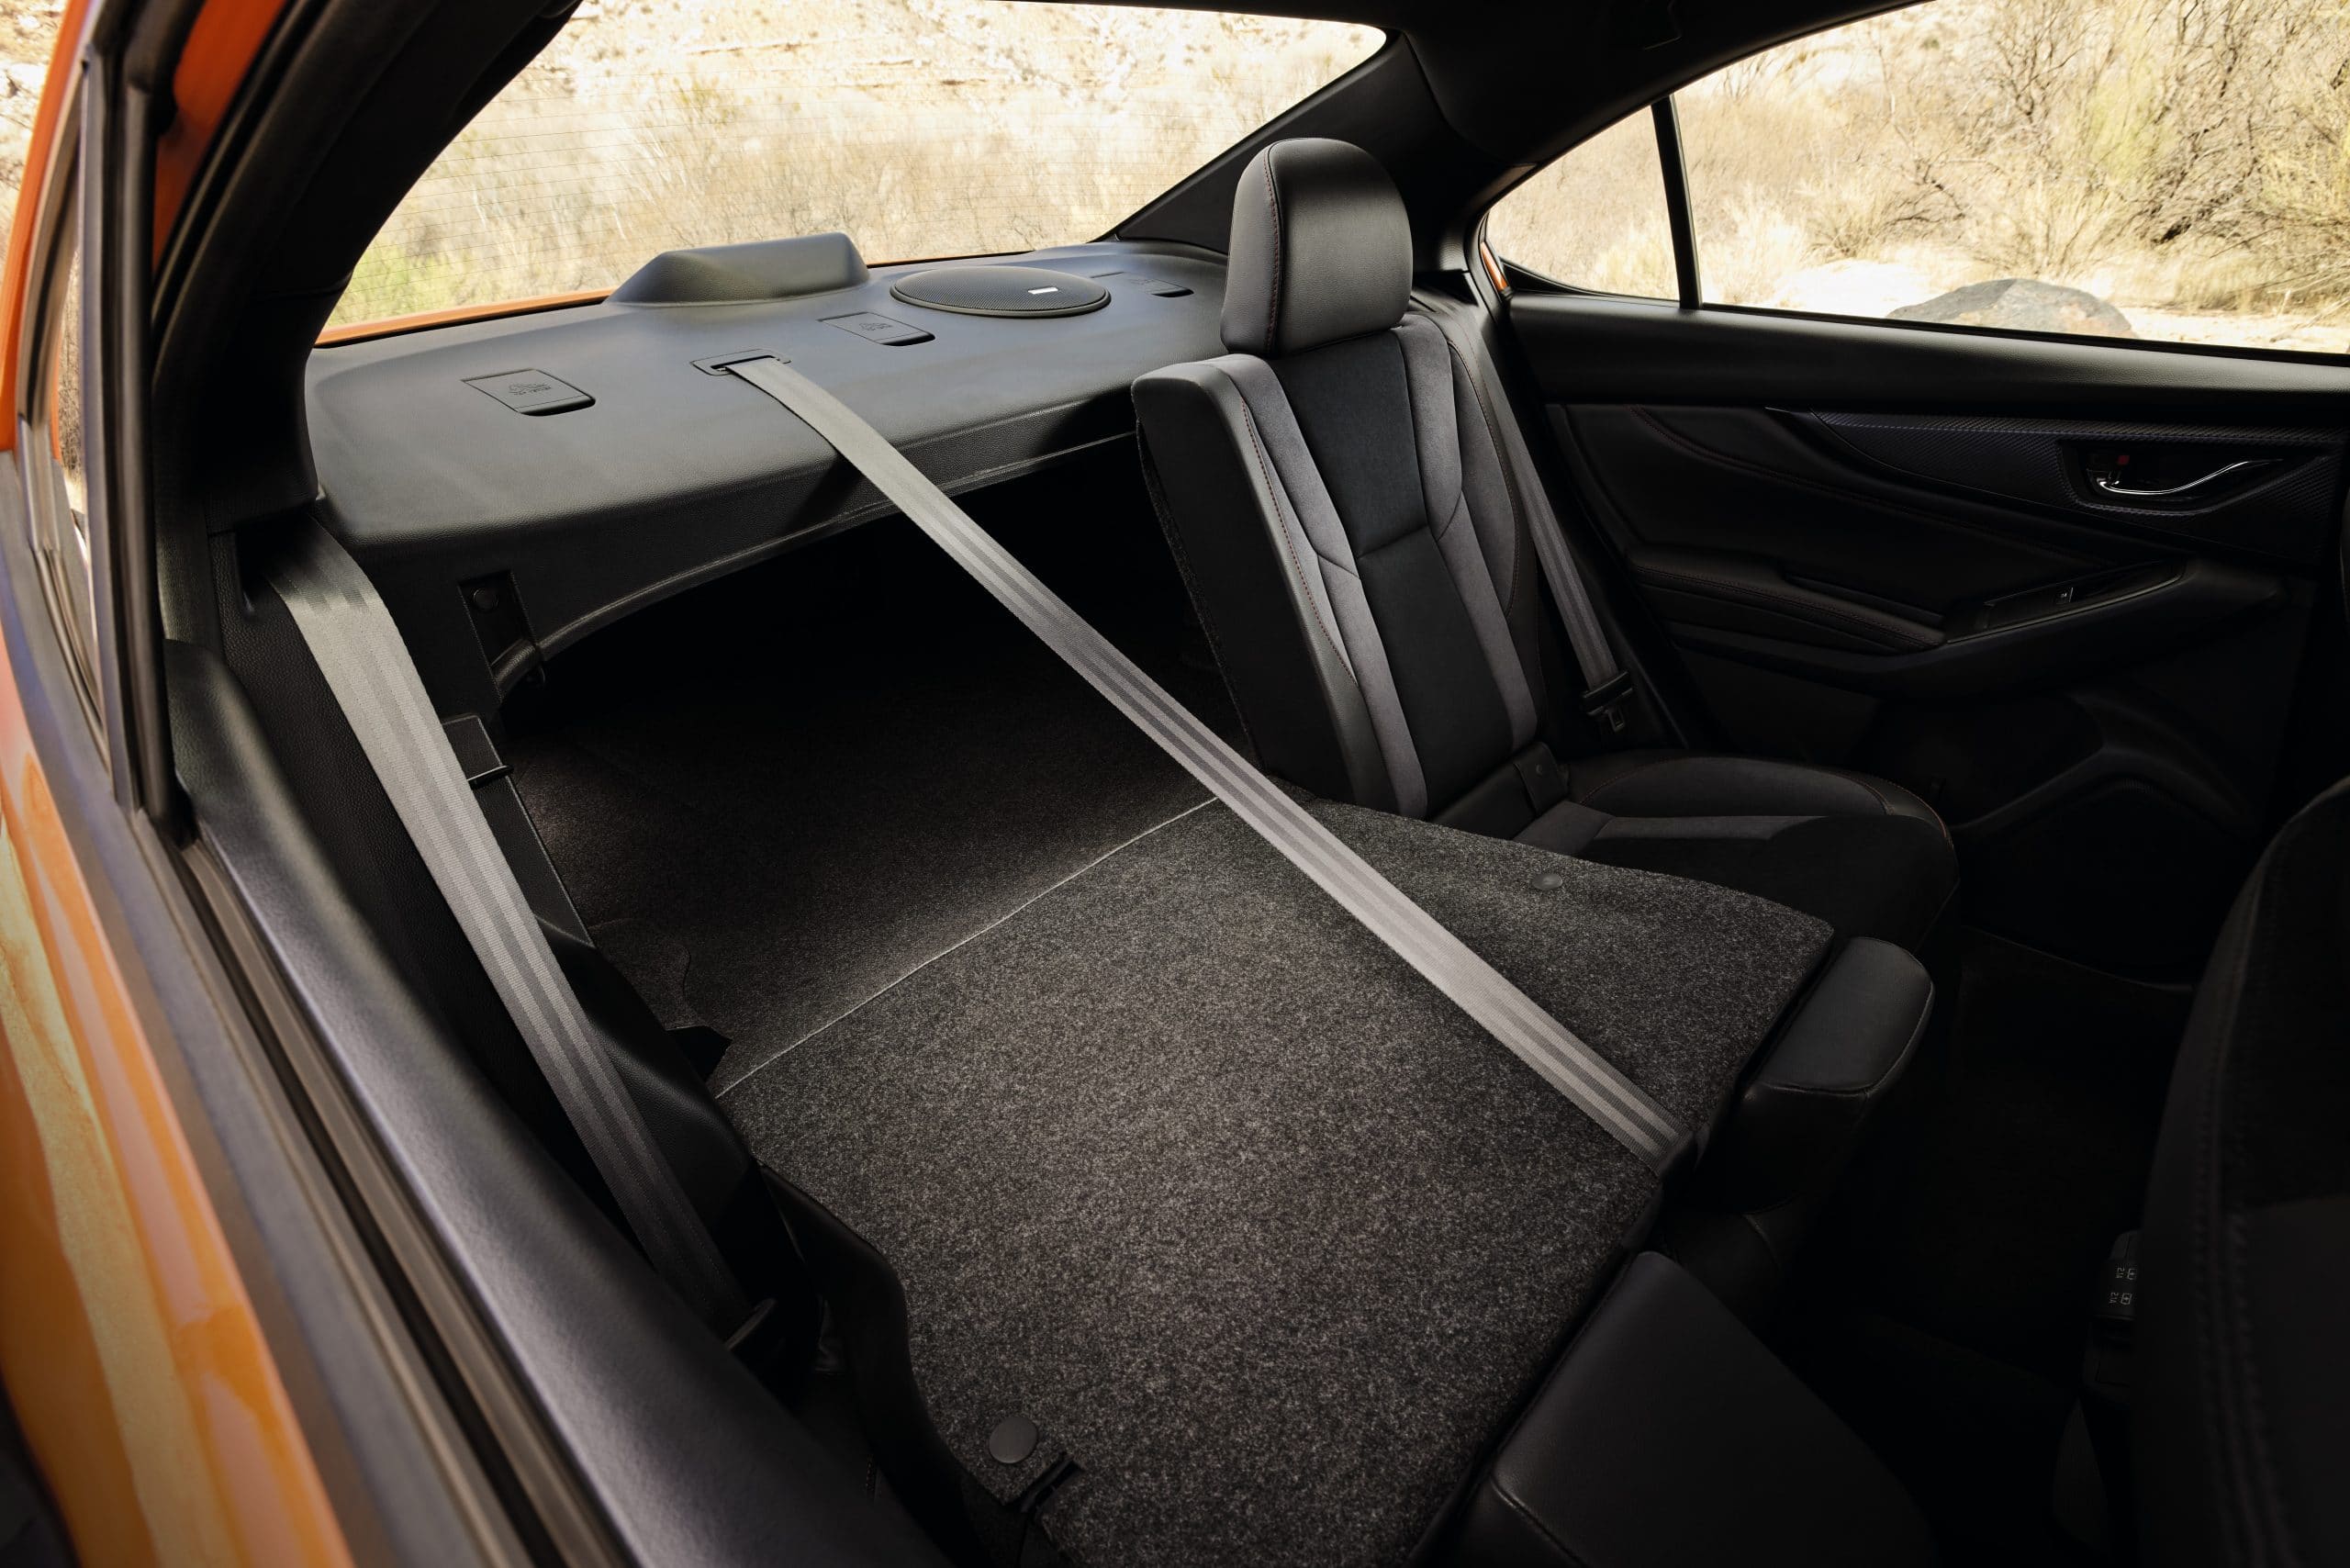 The 60/40 split folding rear seat. Source: https://www.subaru.com/2022-wrx